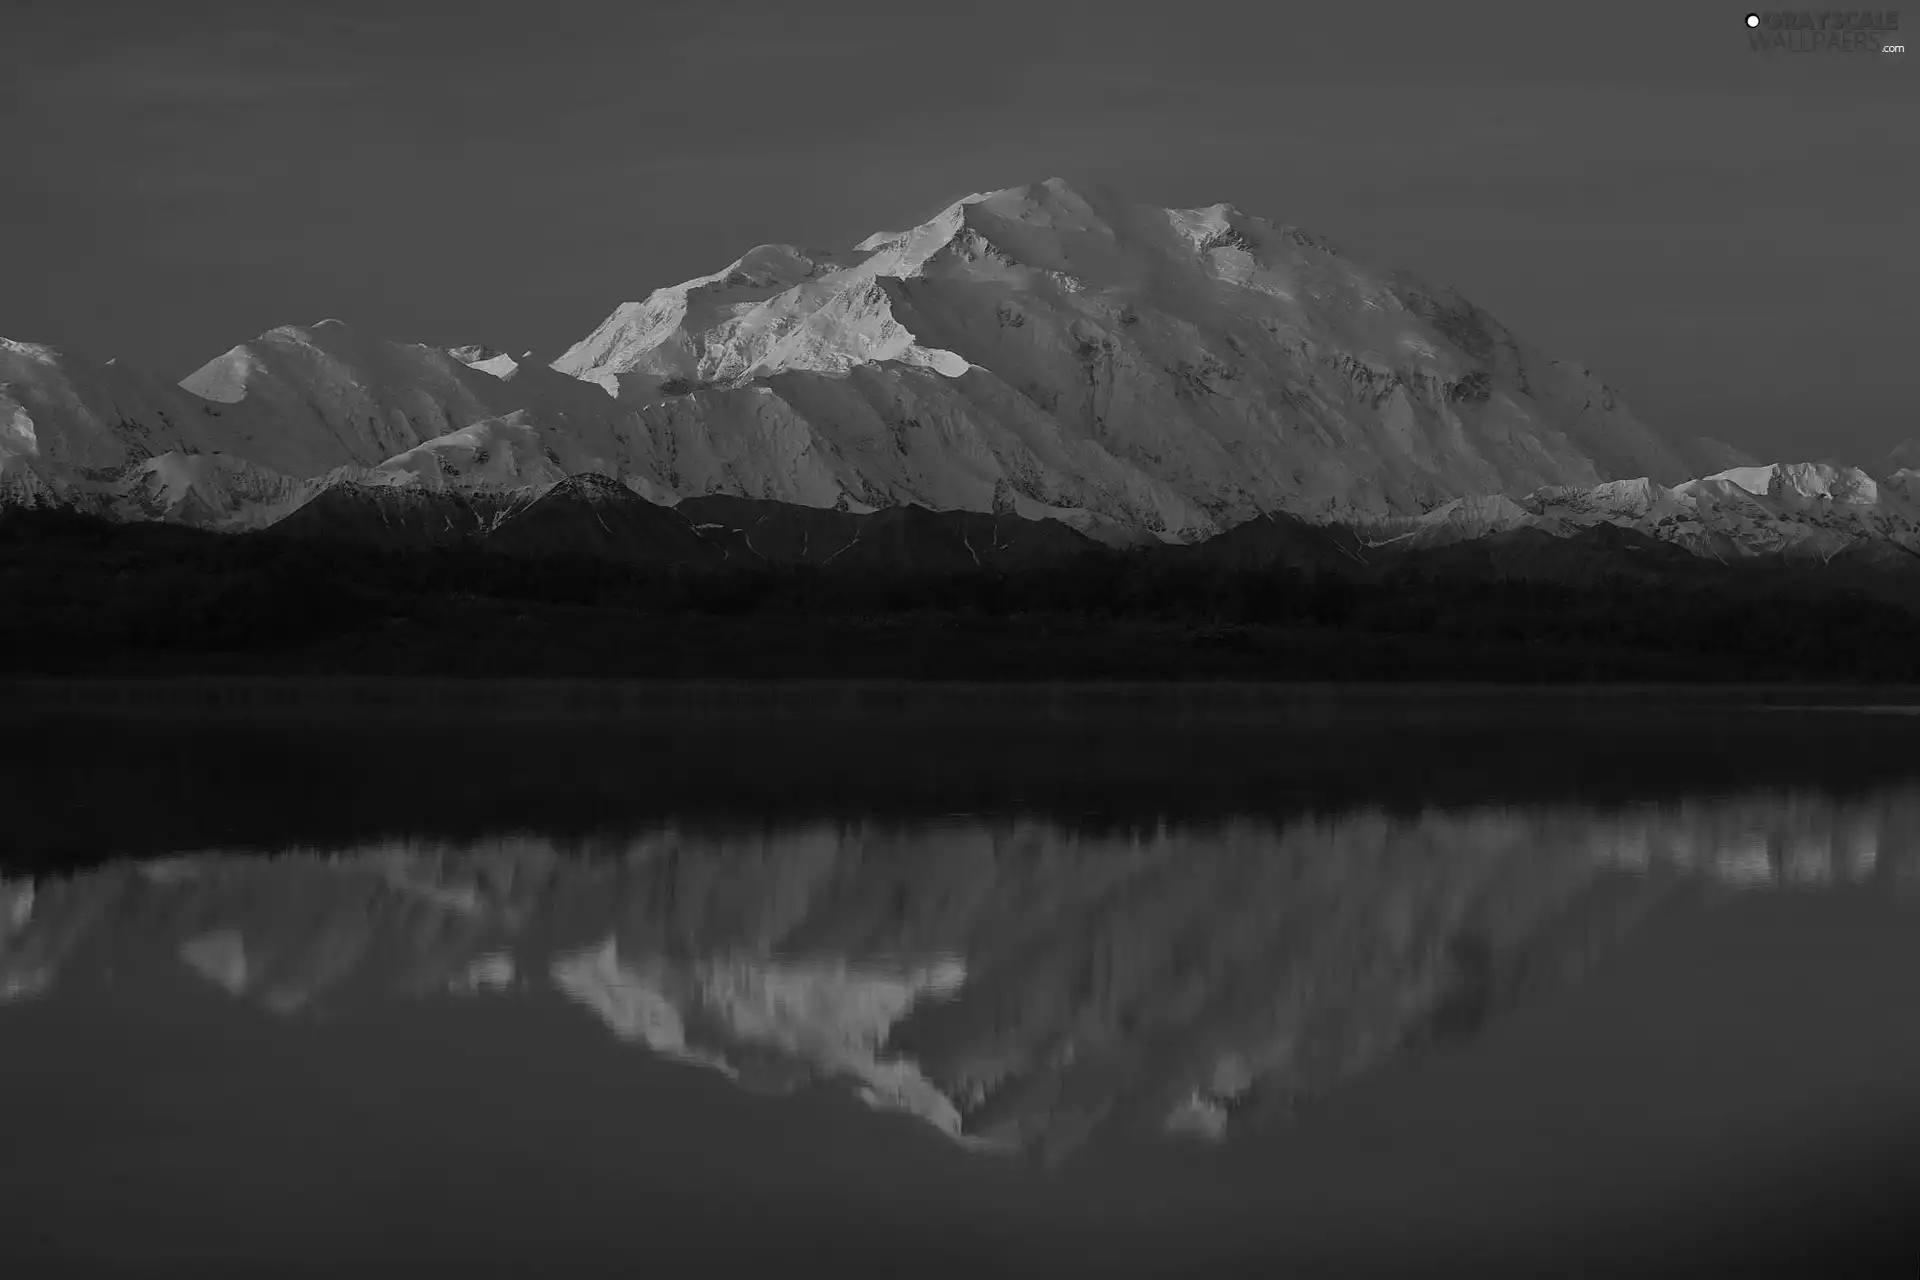 Mountains, lake, reflection, snow